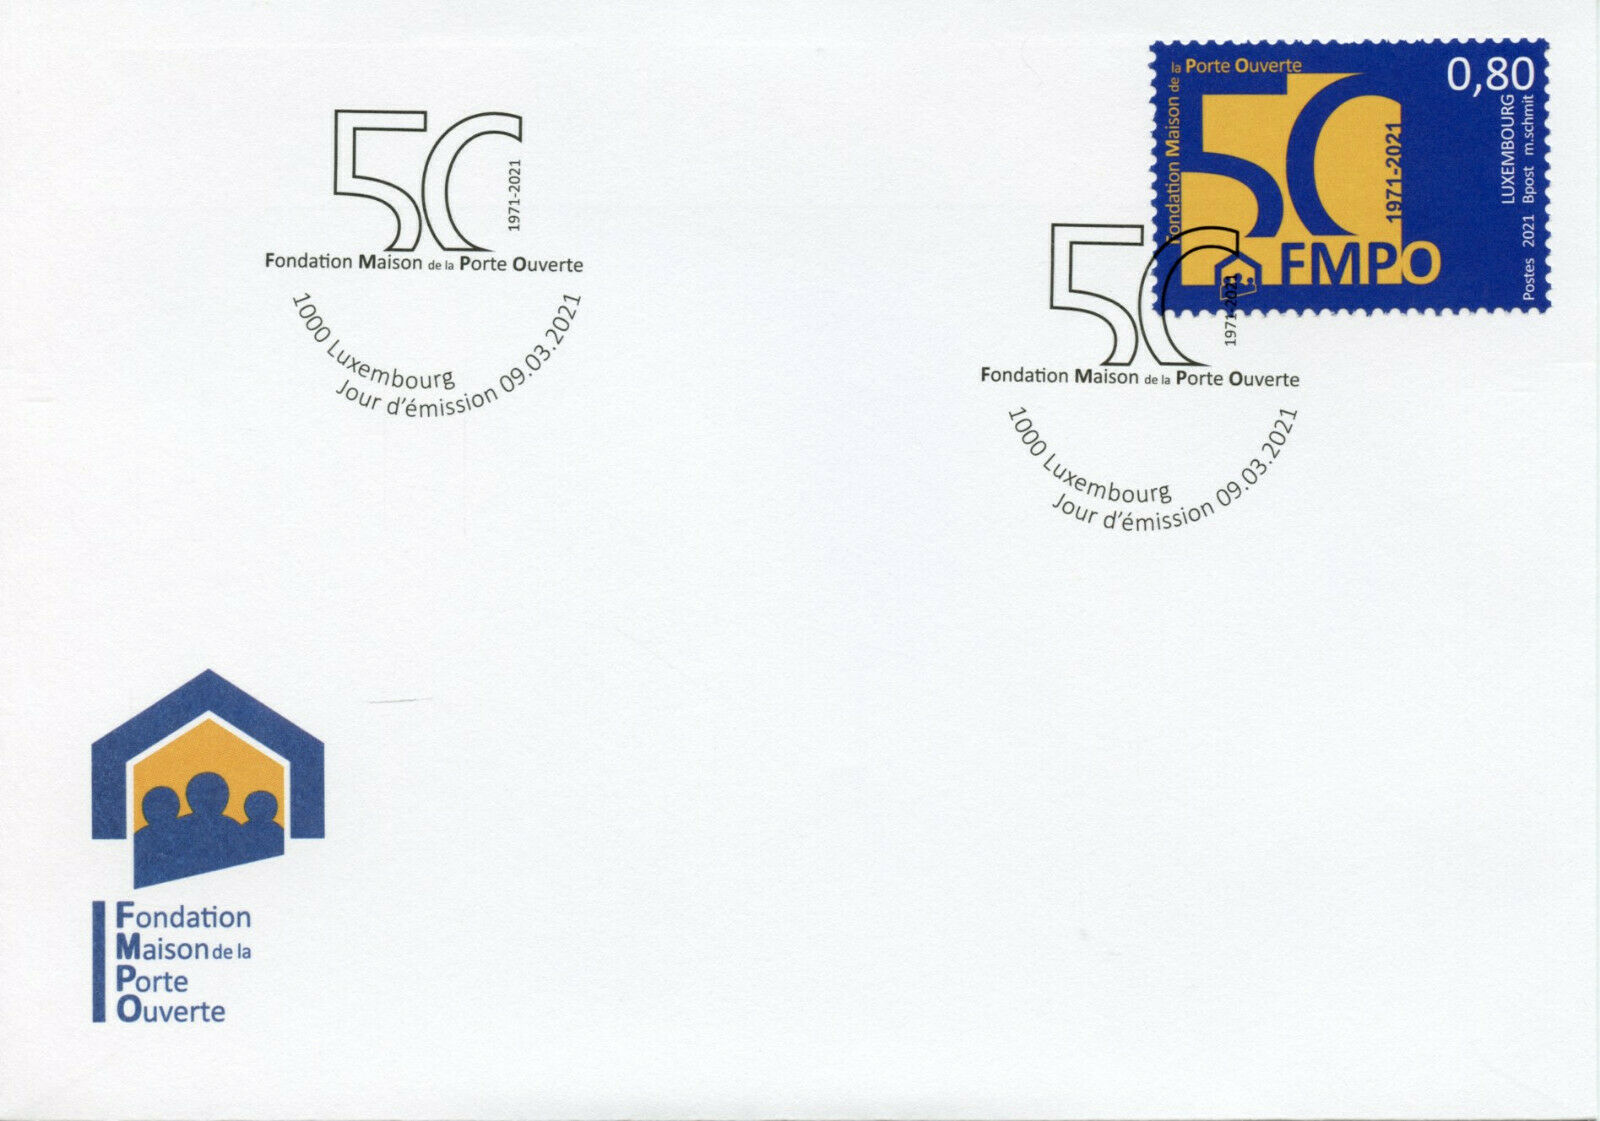 Luxembourg Stamps 2021 FDC Fondation Maison de la Porte Ouverte FMPO 1v Set